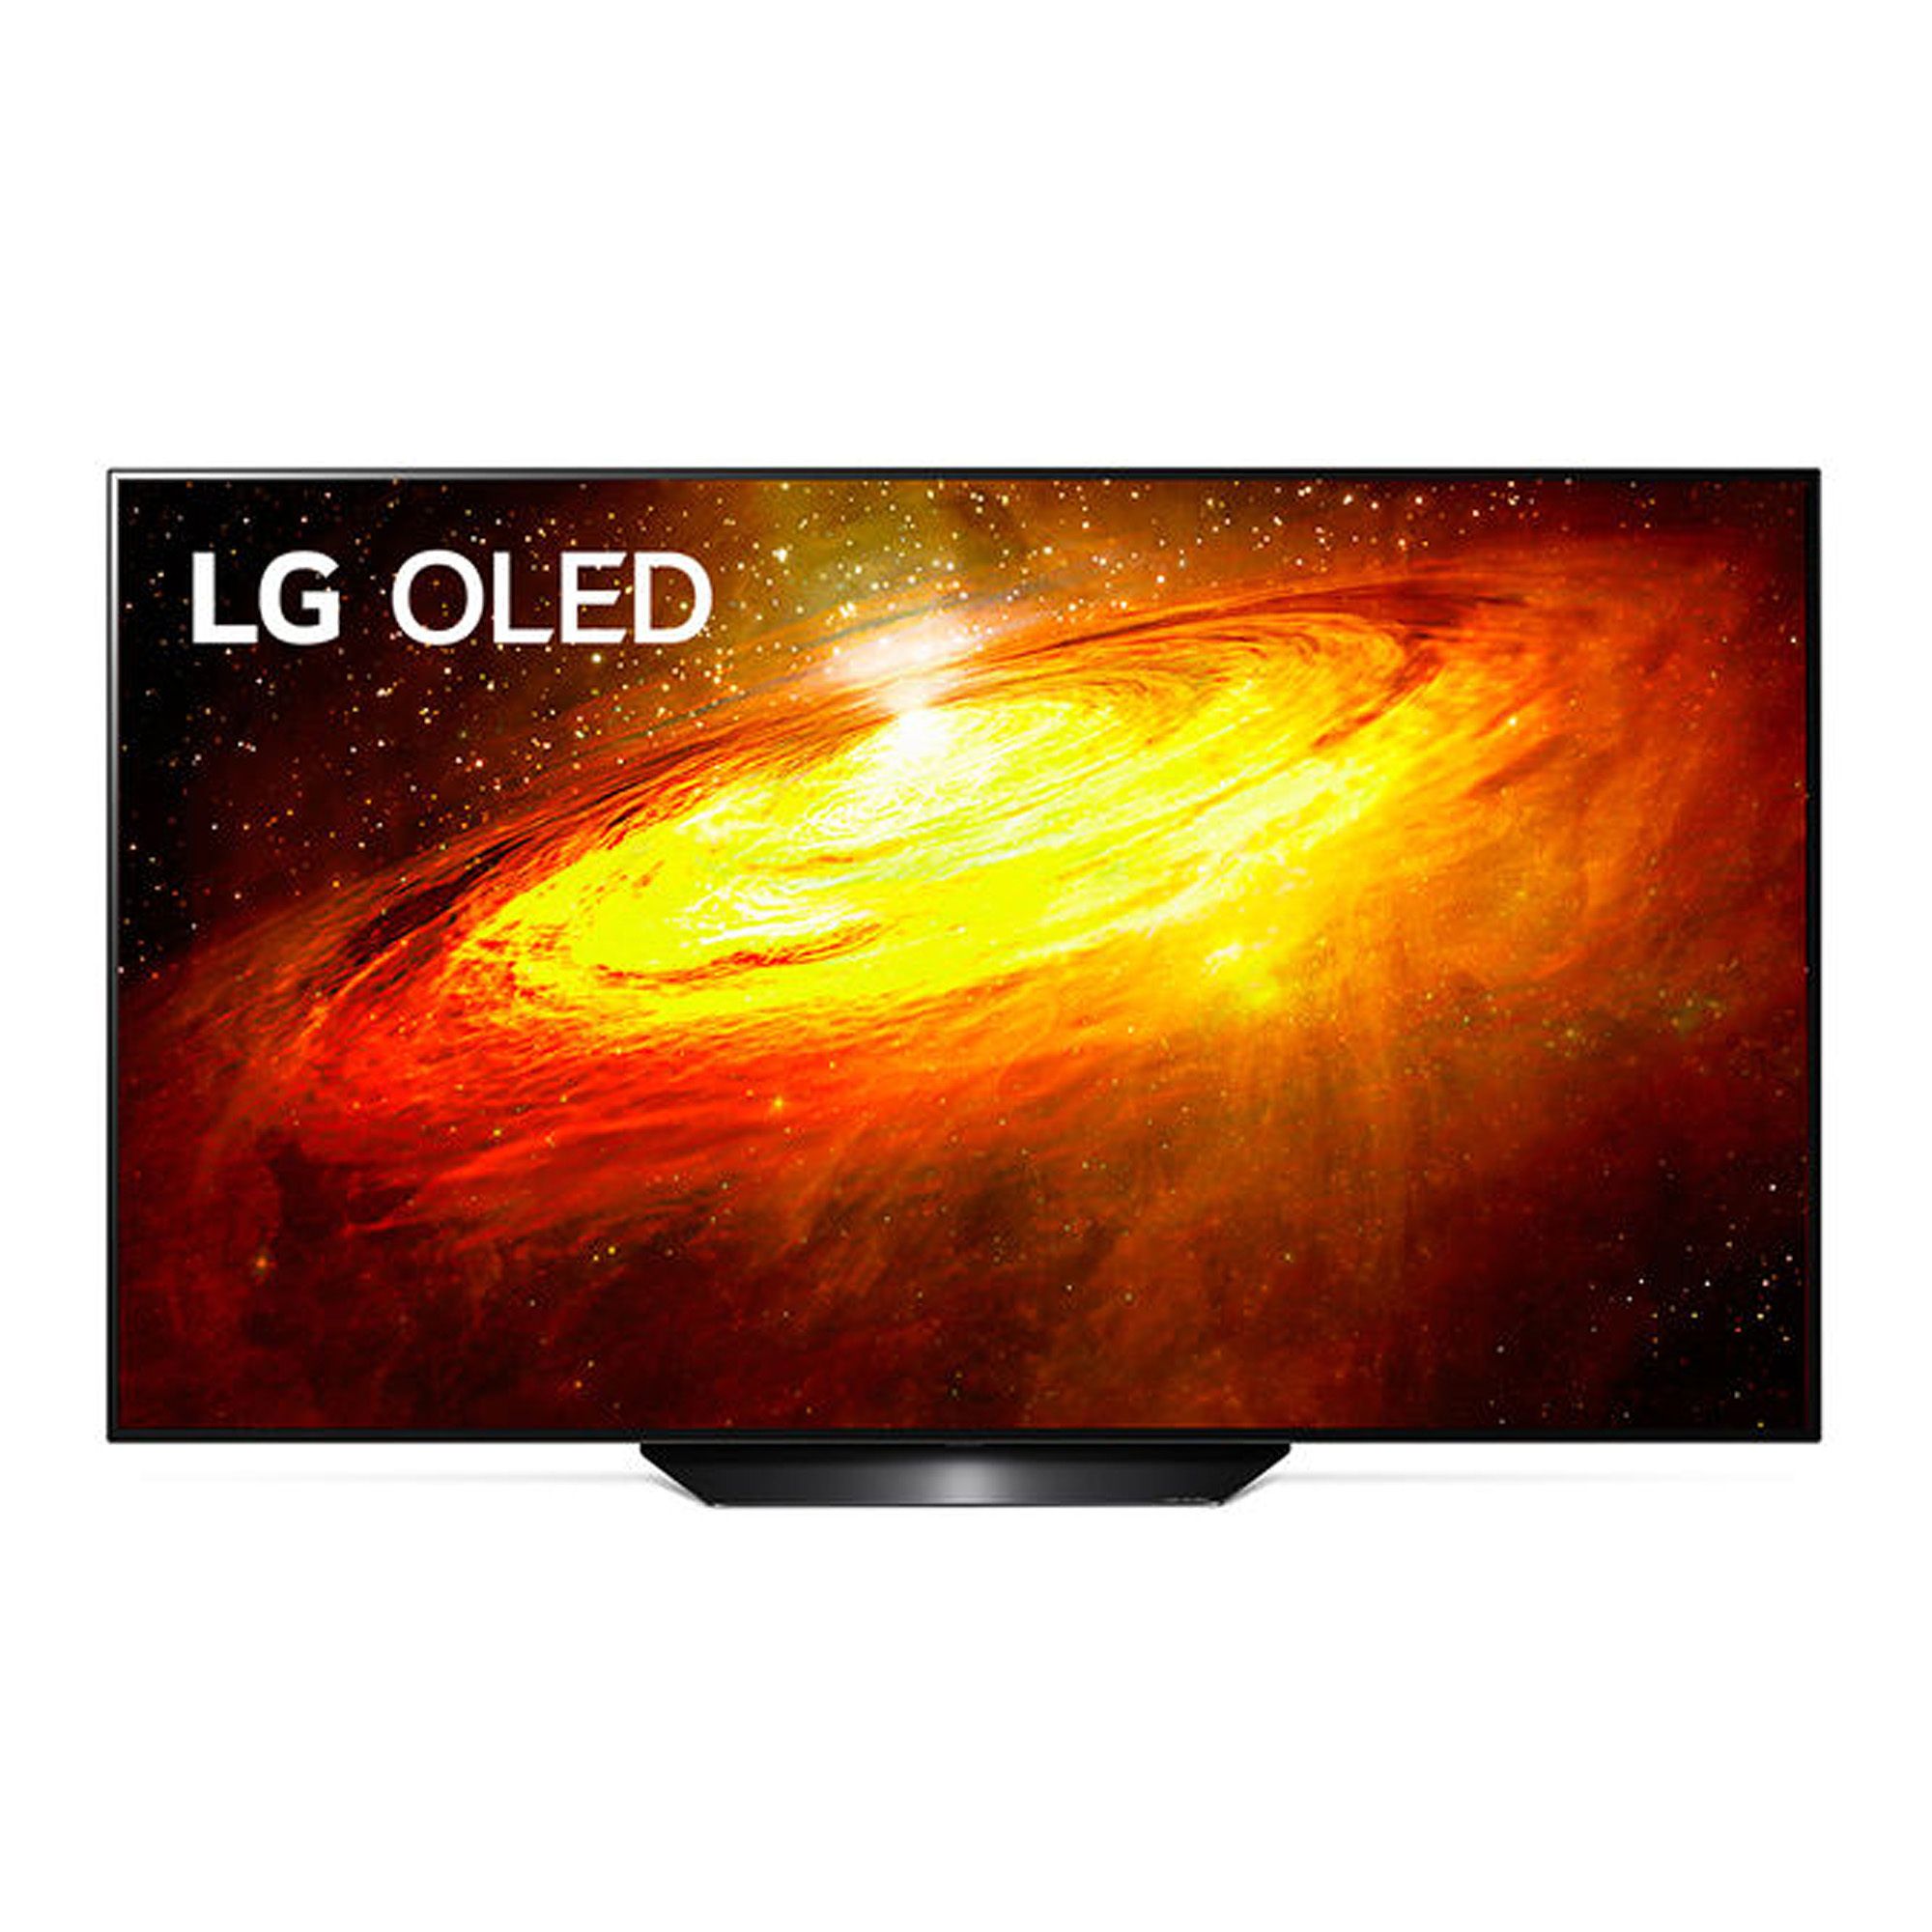 LG TV Oled Ultra HD K Smart Dolby Vision IQ QVC Italia